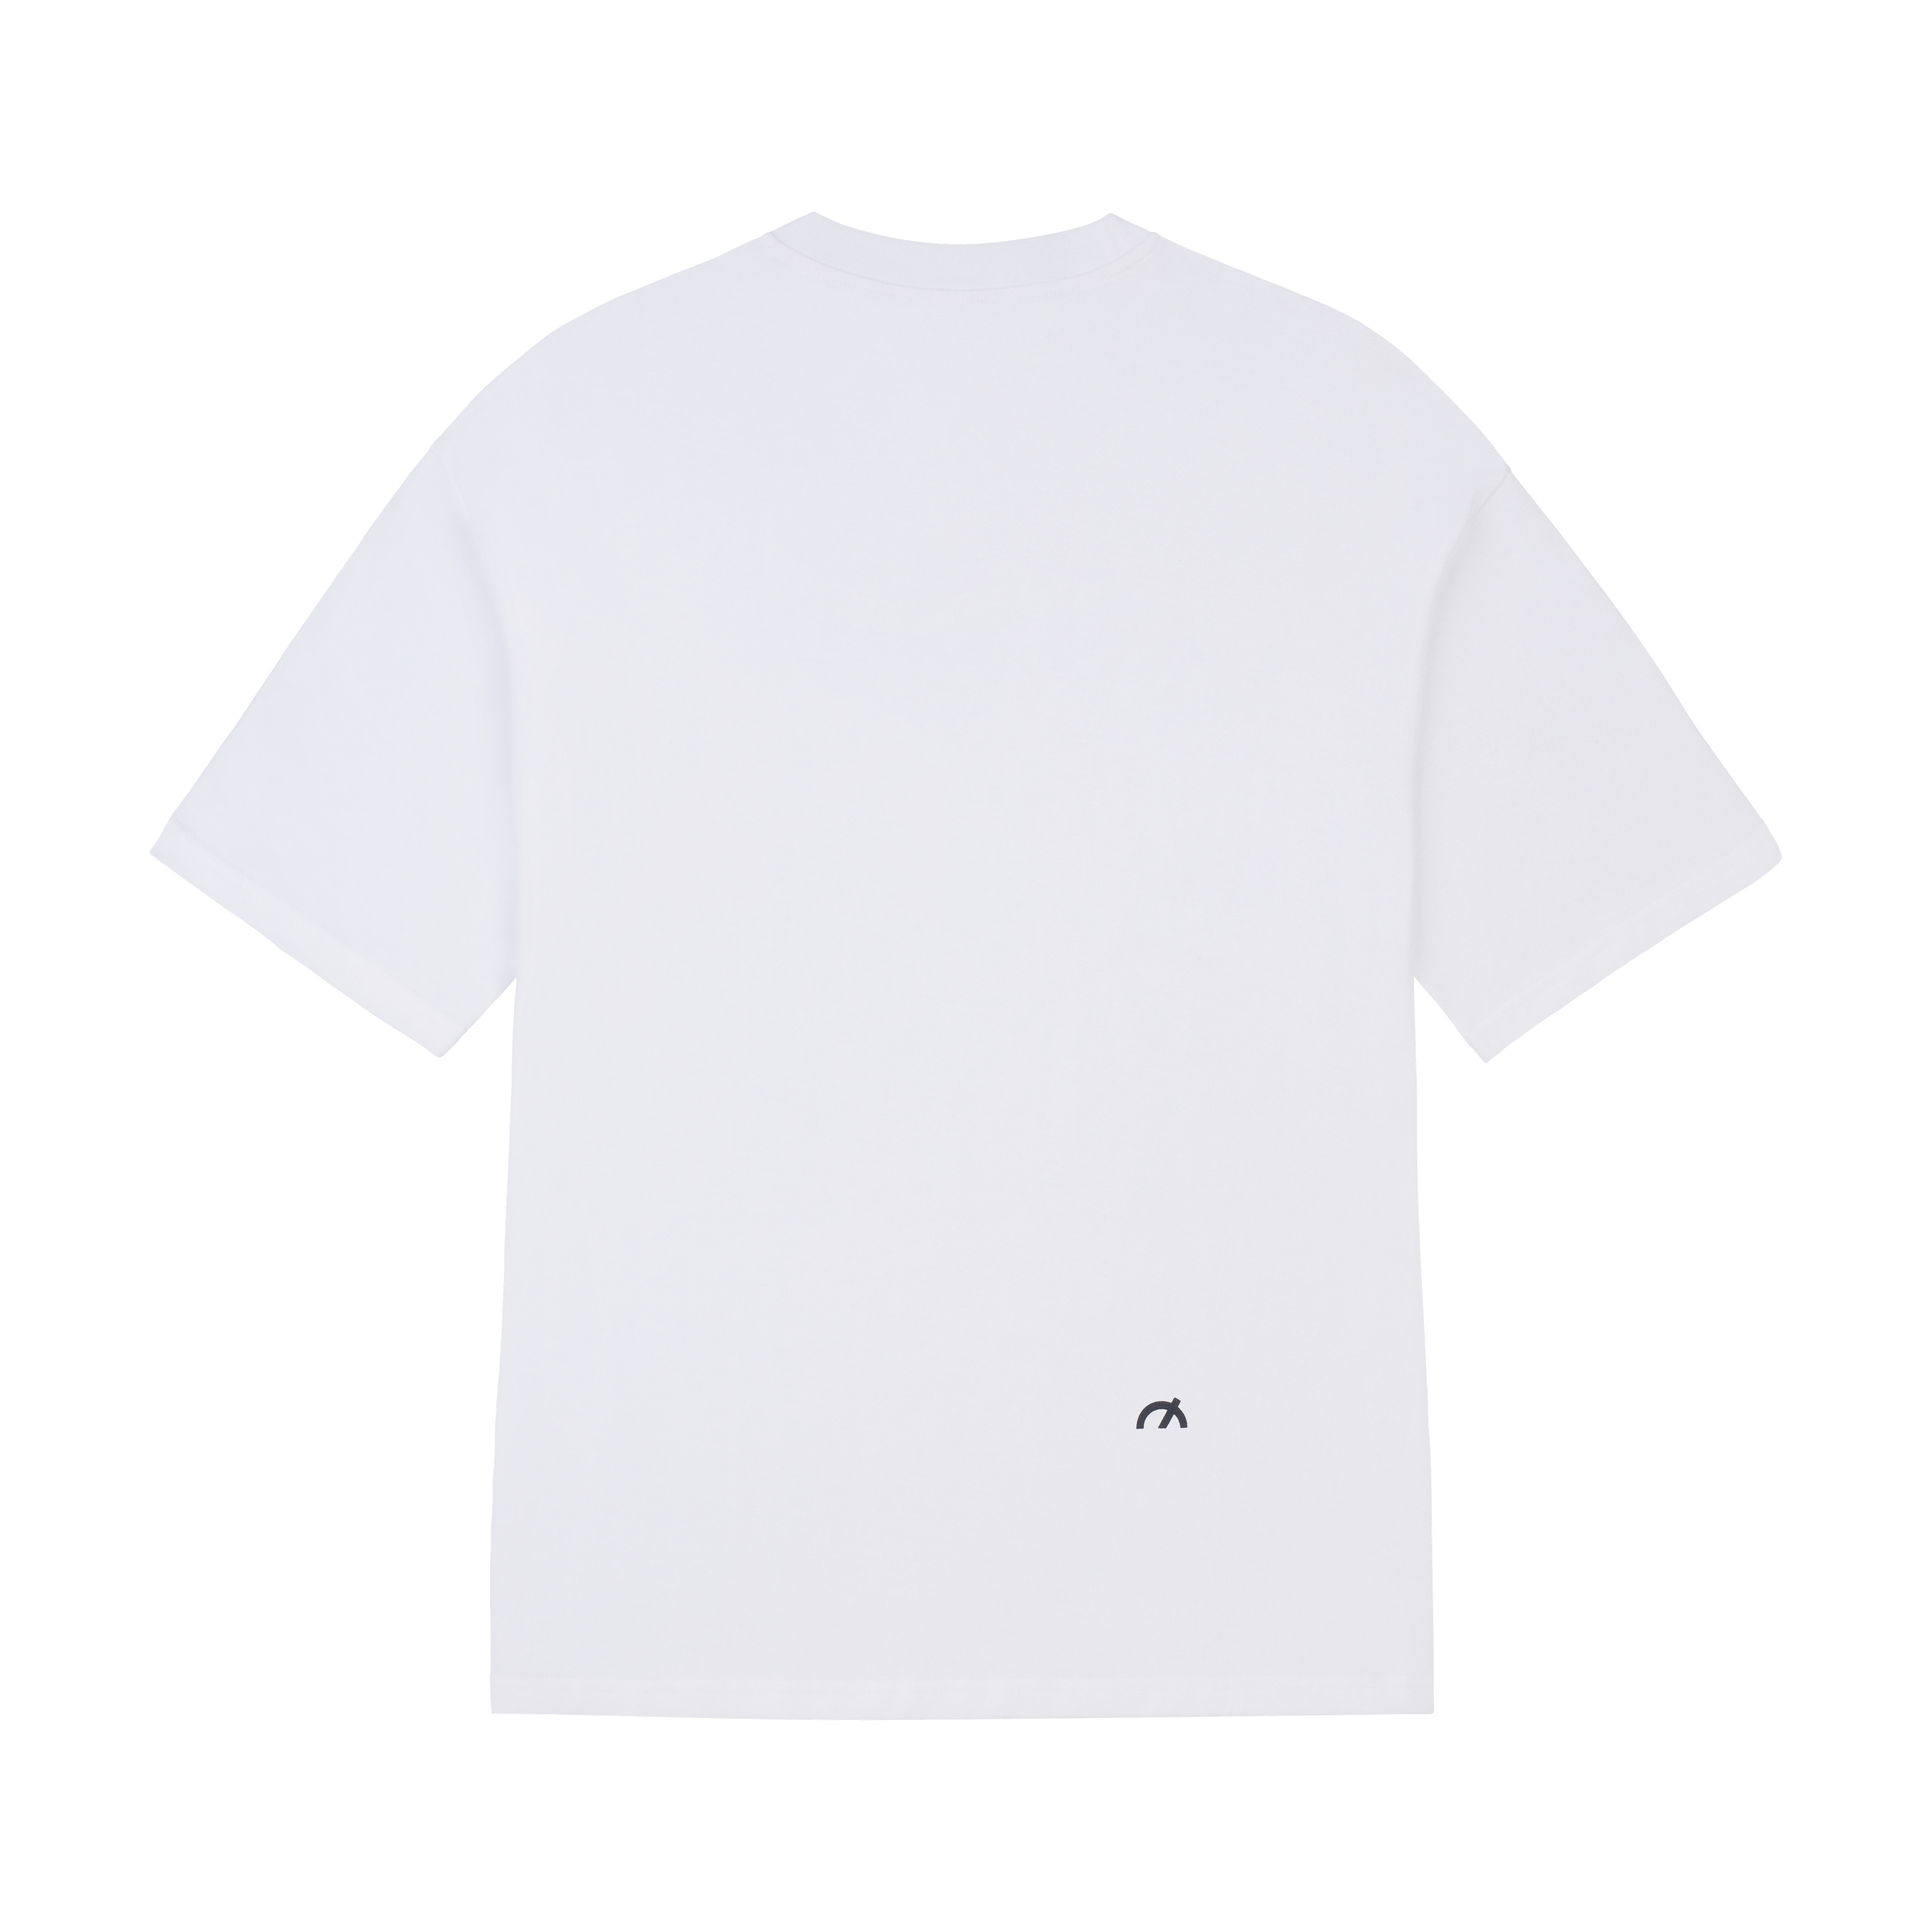 Core Regular T-Shirt